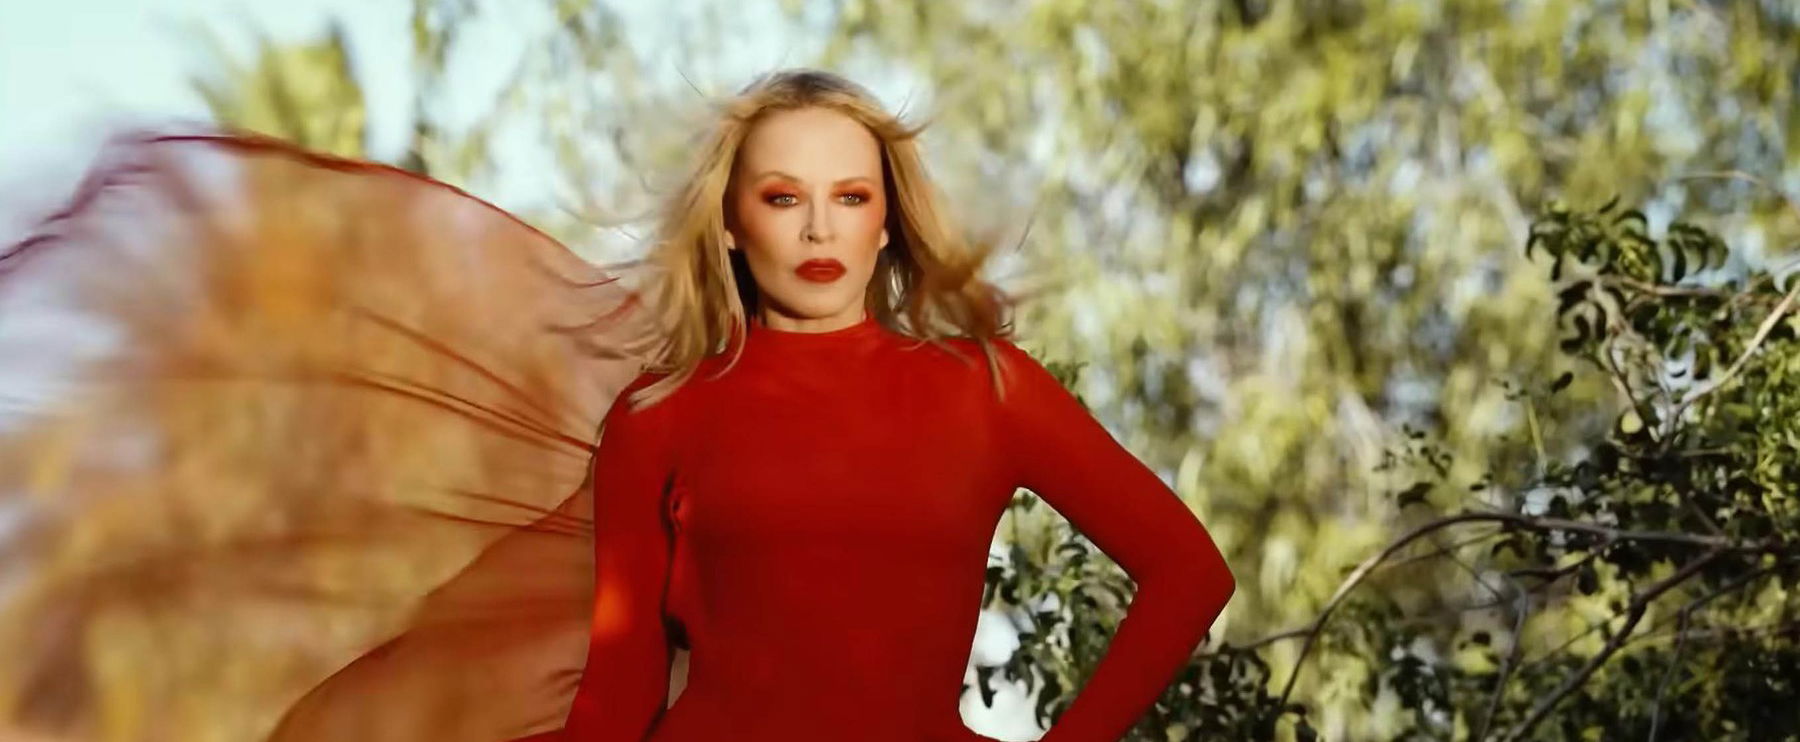 Kylie Minogue visszatért, és dögösebb, mint valaha - Így néz ki most a világsztár, aki új dalt hozott nekünk